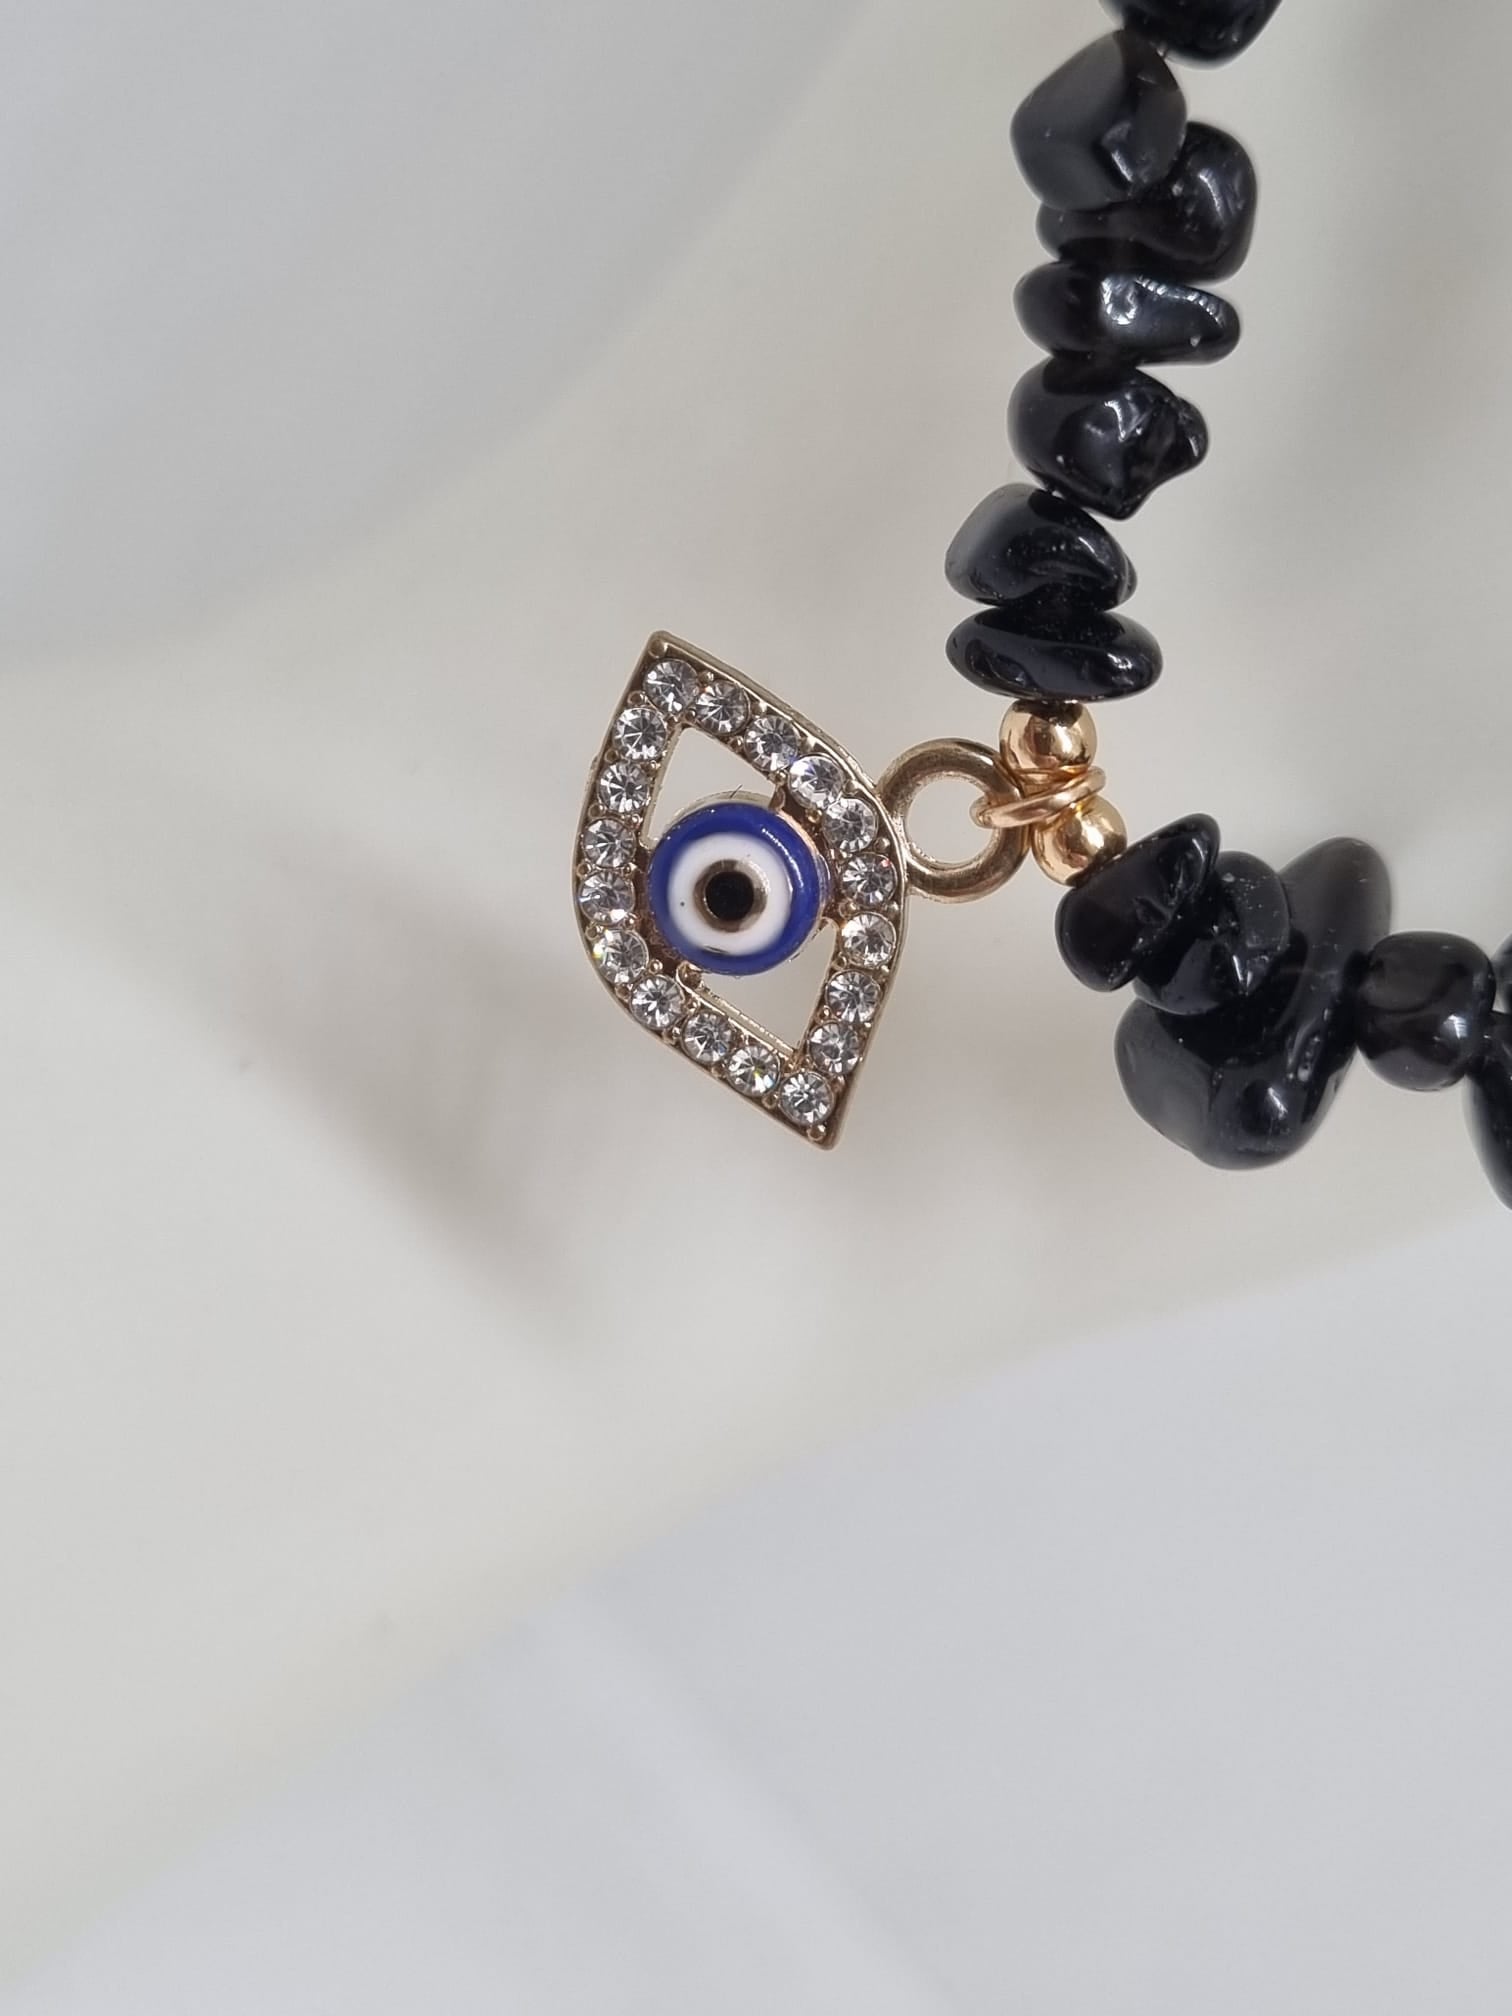 Obsidian evil eye bracelet